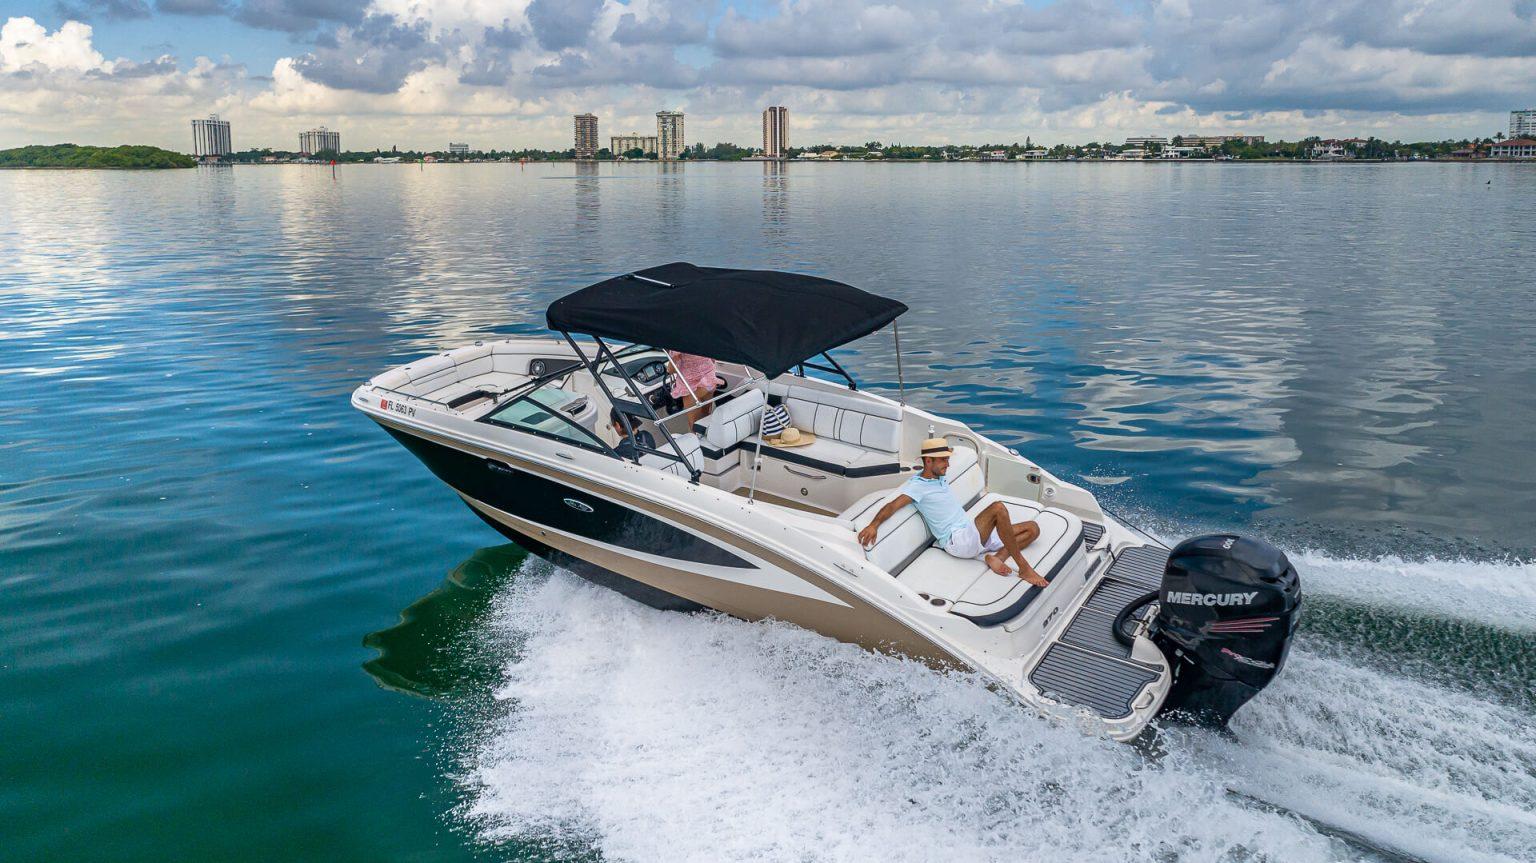 Amazing Miami Giant Boat Tours by Aquarius!